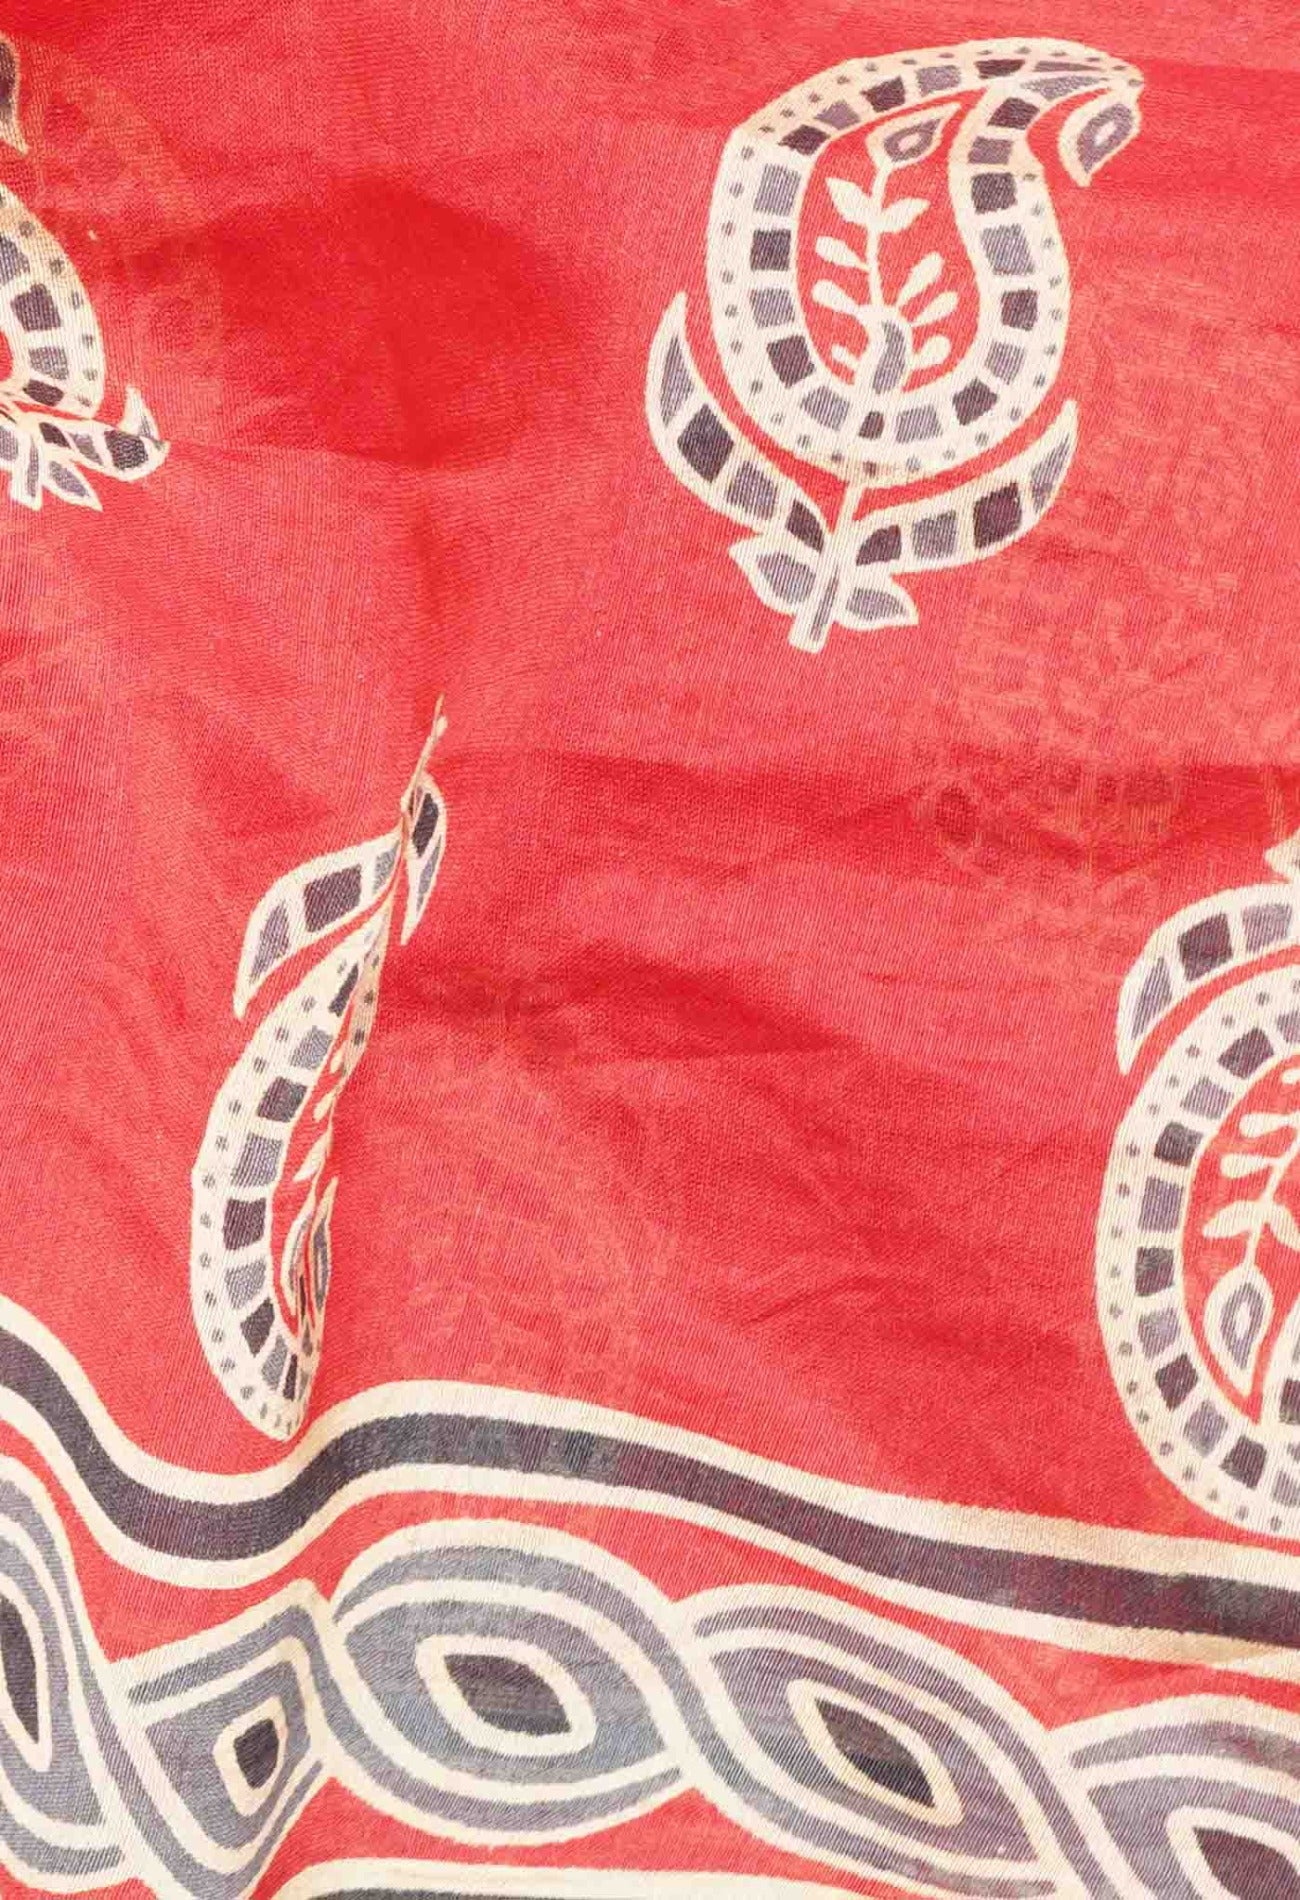 Red Pure Ajrakh Chanderi Sico Saree-UNM58895